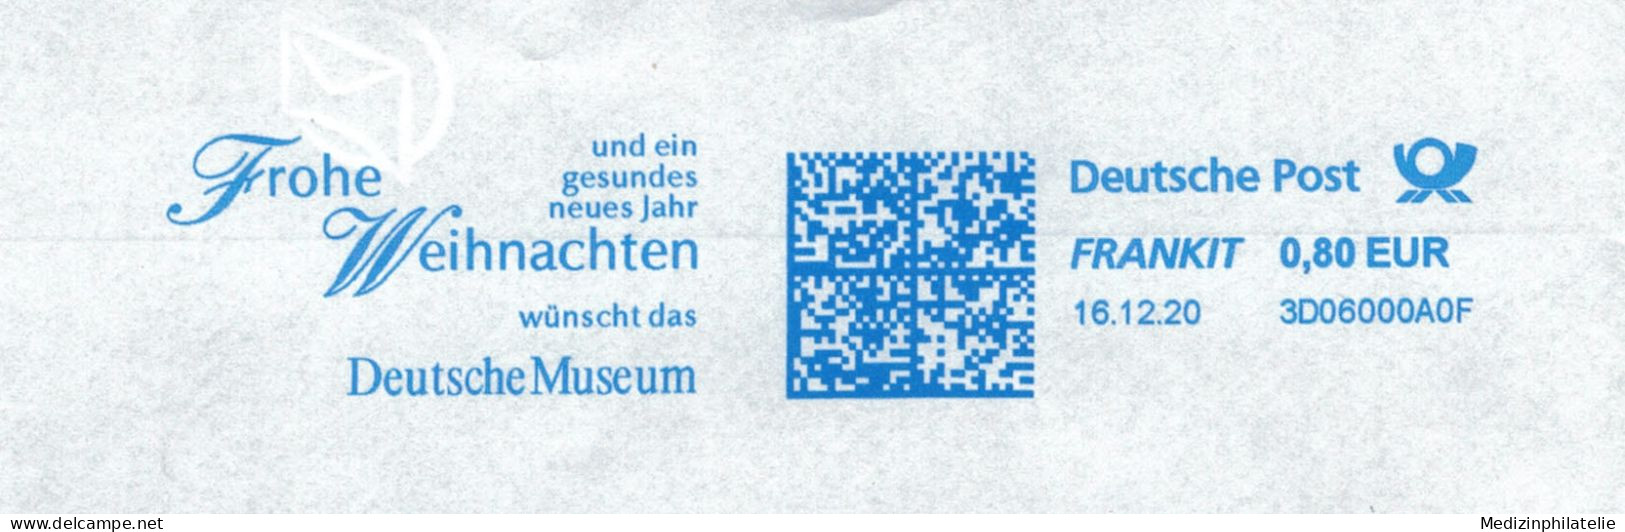 Frohe Weihnacht Wünscht Deutsches Museum  2020 - Museums